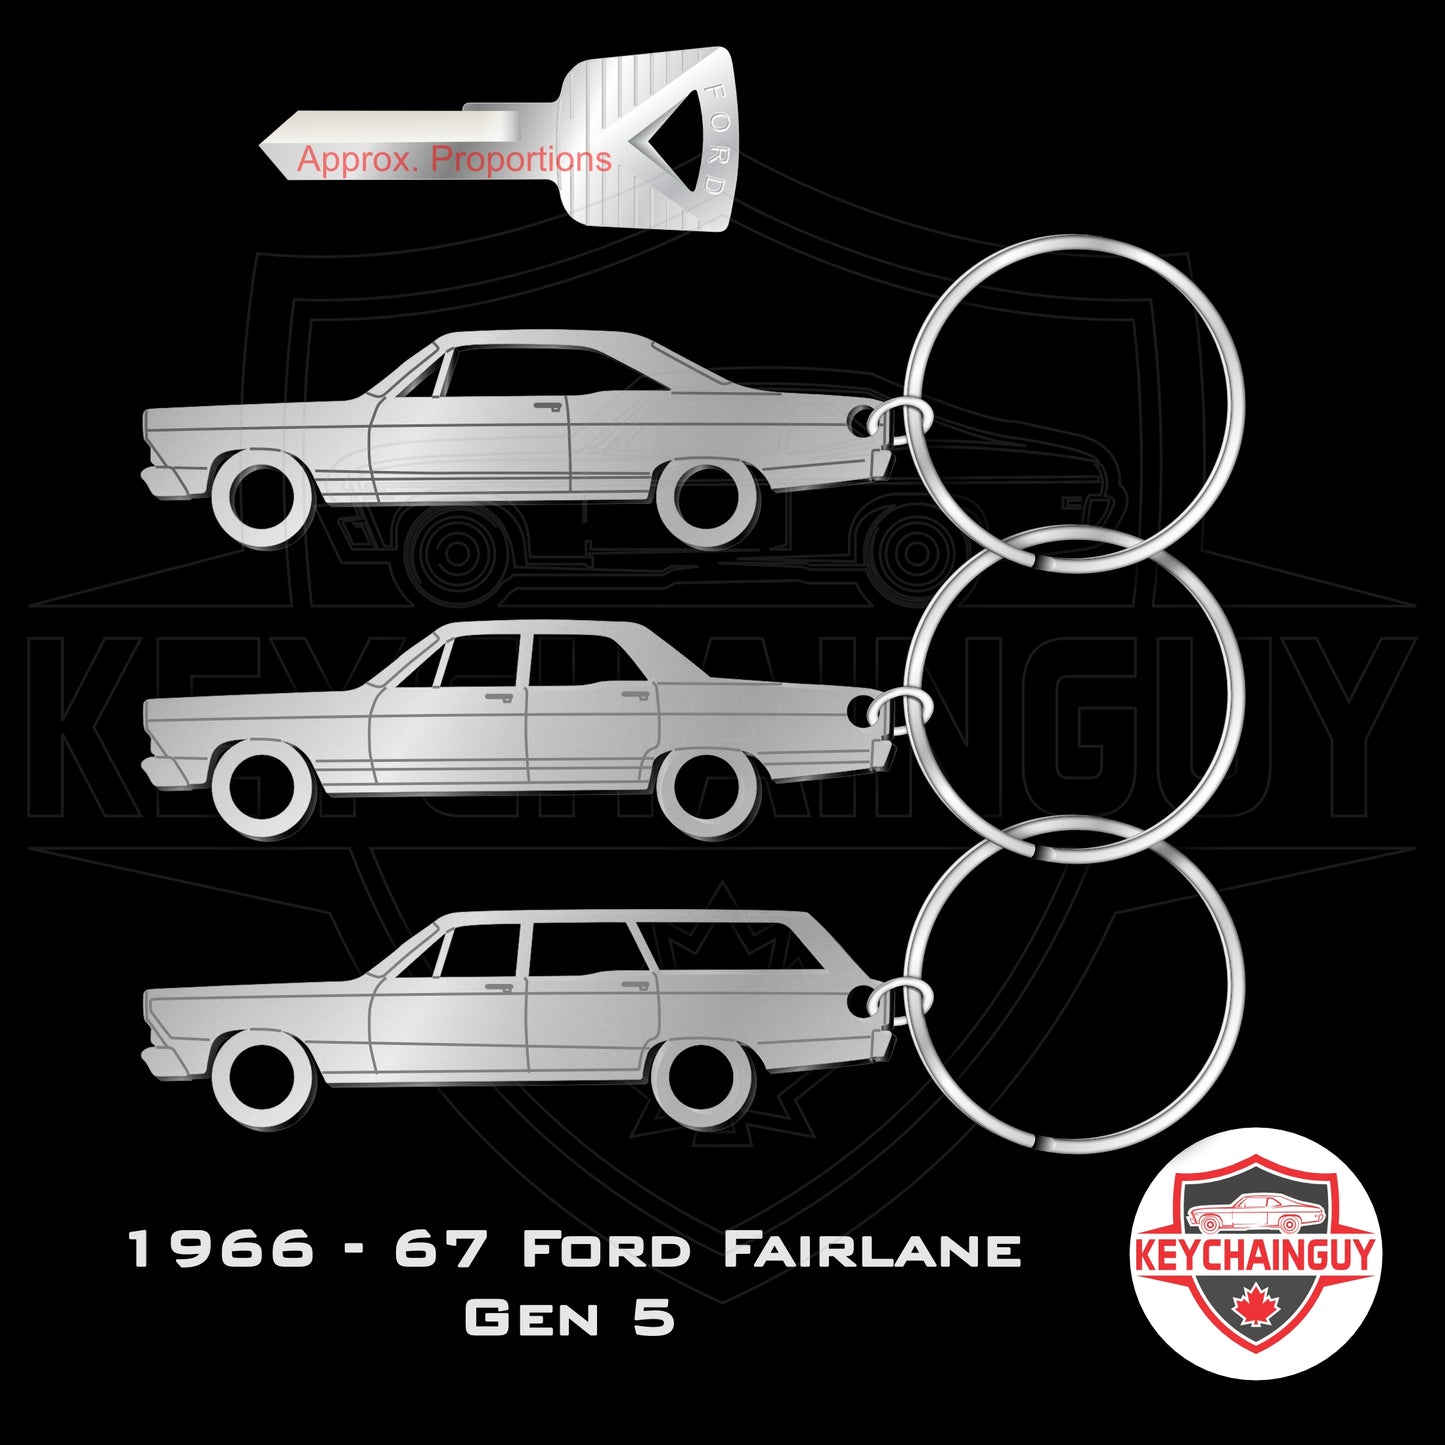 1966 - 1967 Ford Fairlane 2 Door, 4 Door, Wagon (Gen 5)